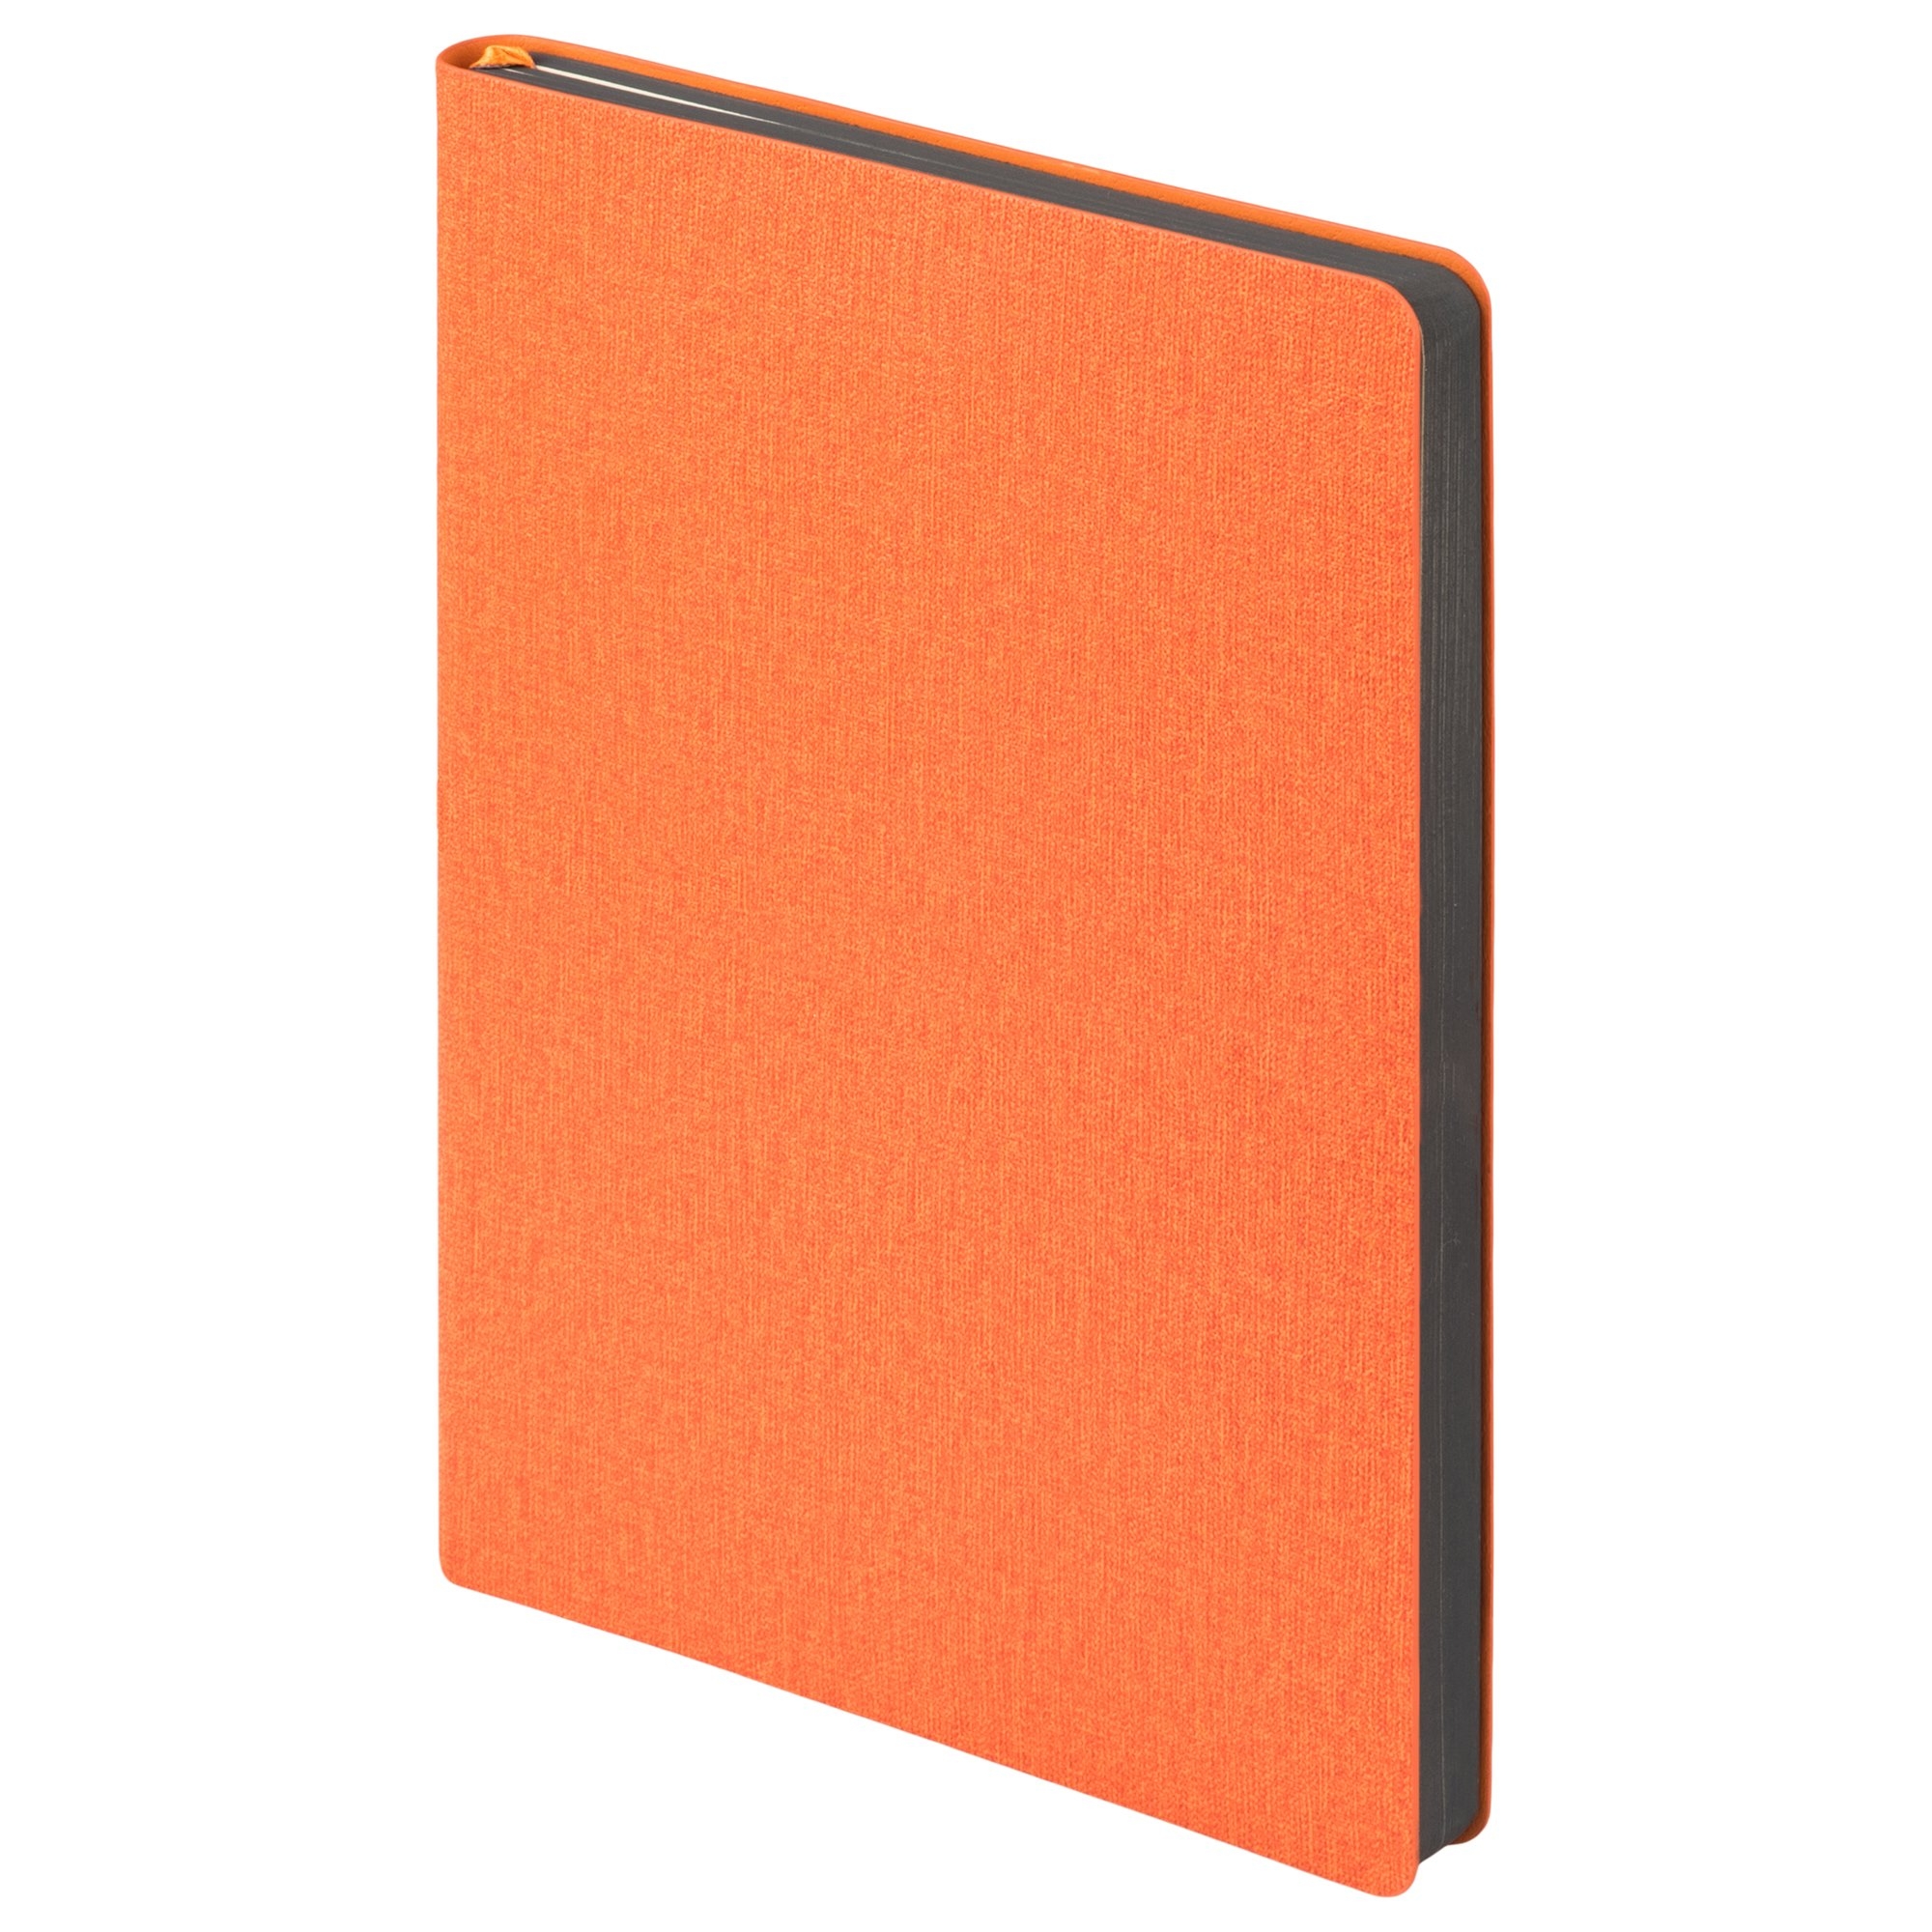 Ежедневник Tweed недатированный, оранжевый, оранжевый